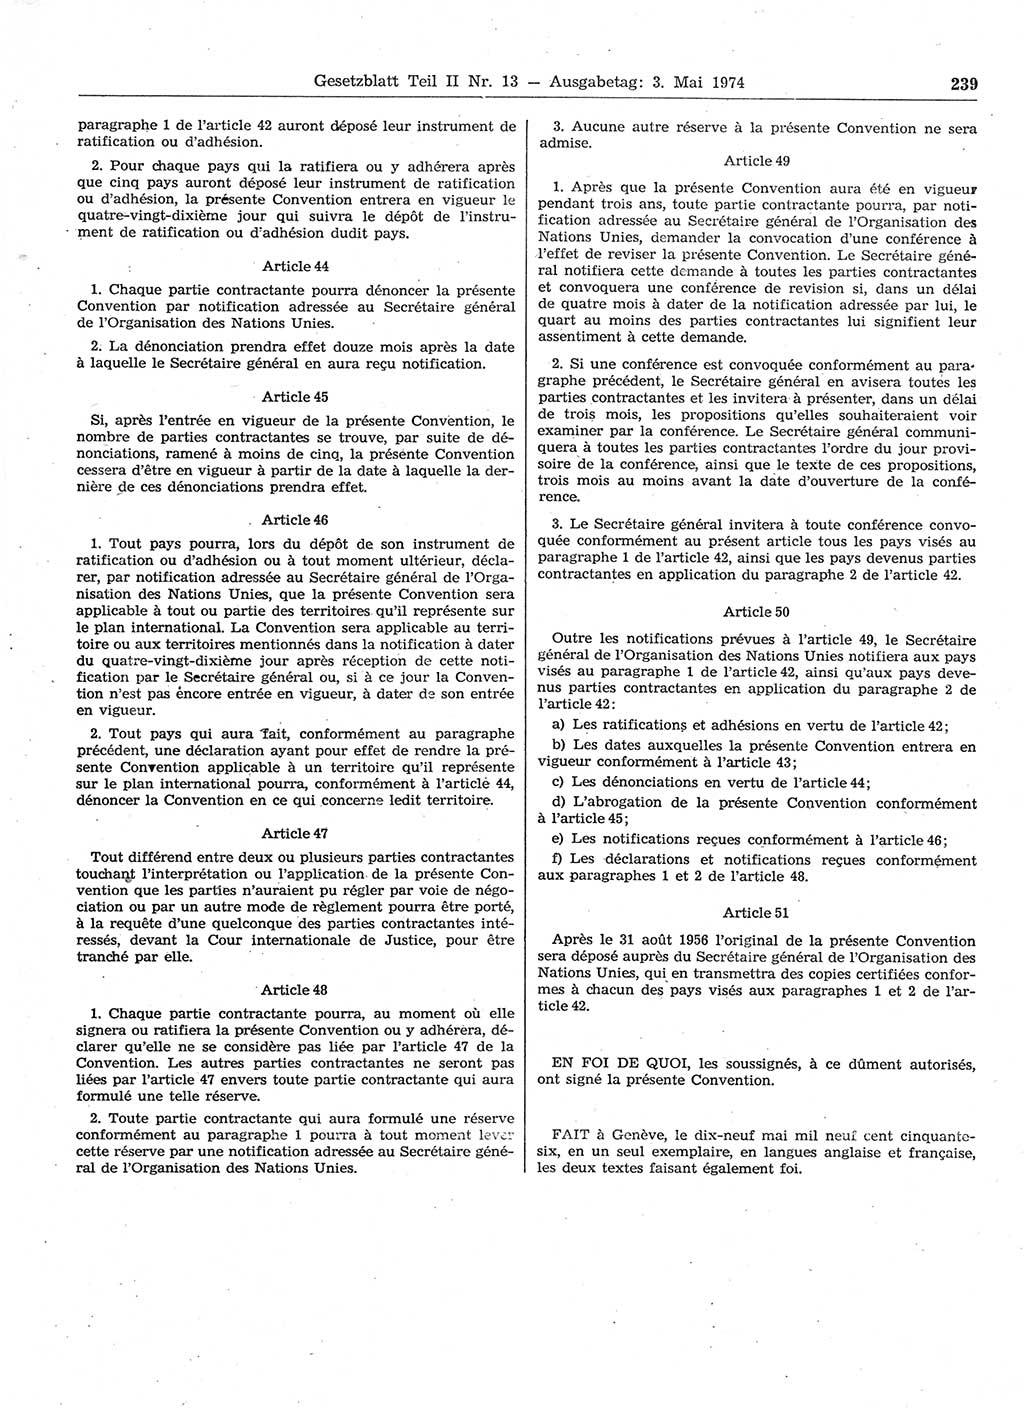 Gesetzblatt (GBl.) der Deutschen Demokratischen Republik (DDR) Teil ⅠⅠ 1974, Seite 239 (GBl. DDR ⅠⅠ 1974, S. 239)